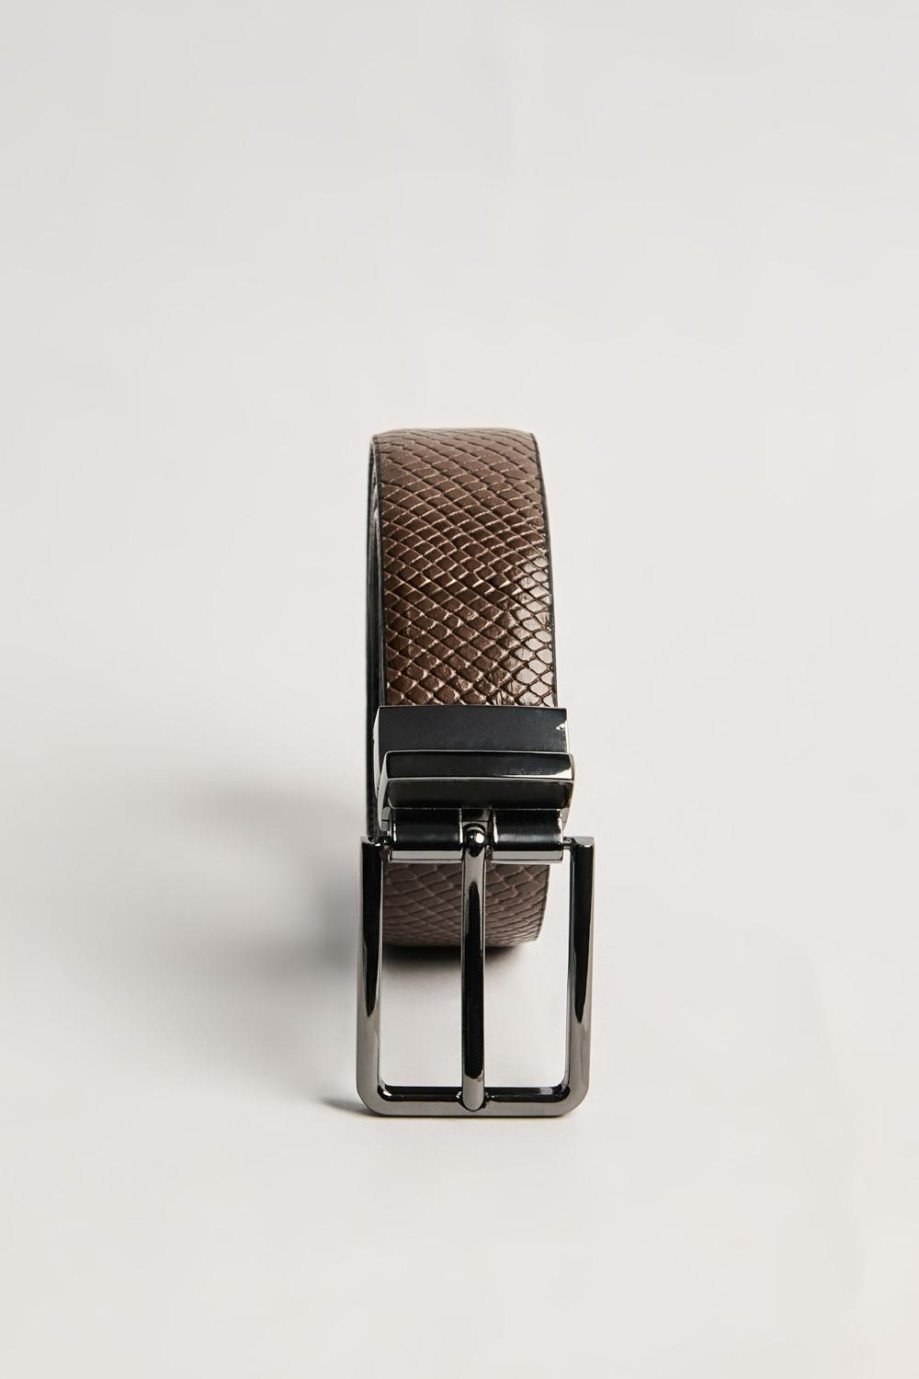 Cinturón café oscuro reversible con texturas de reptil